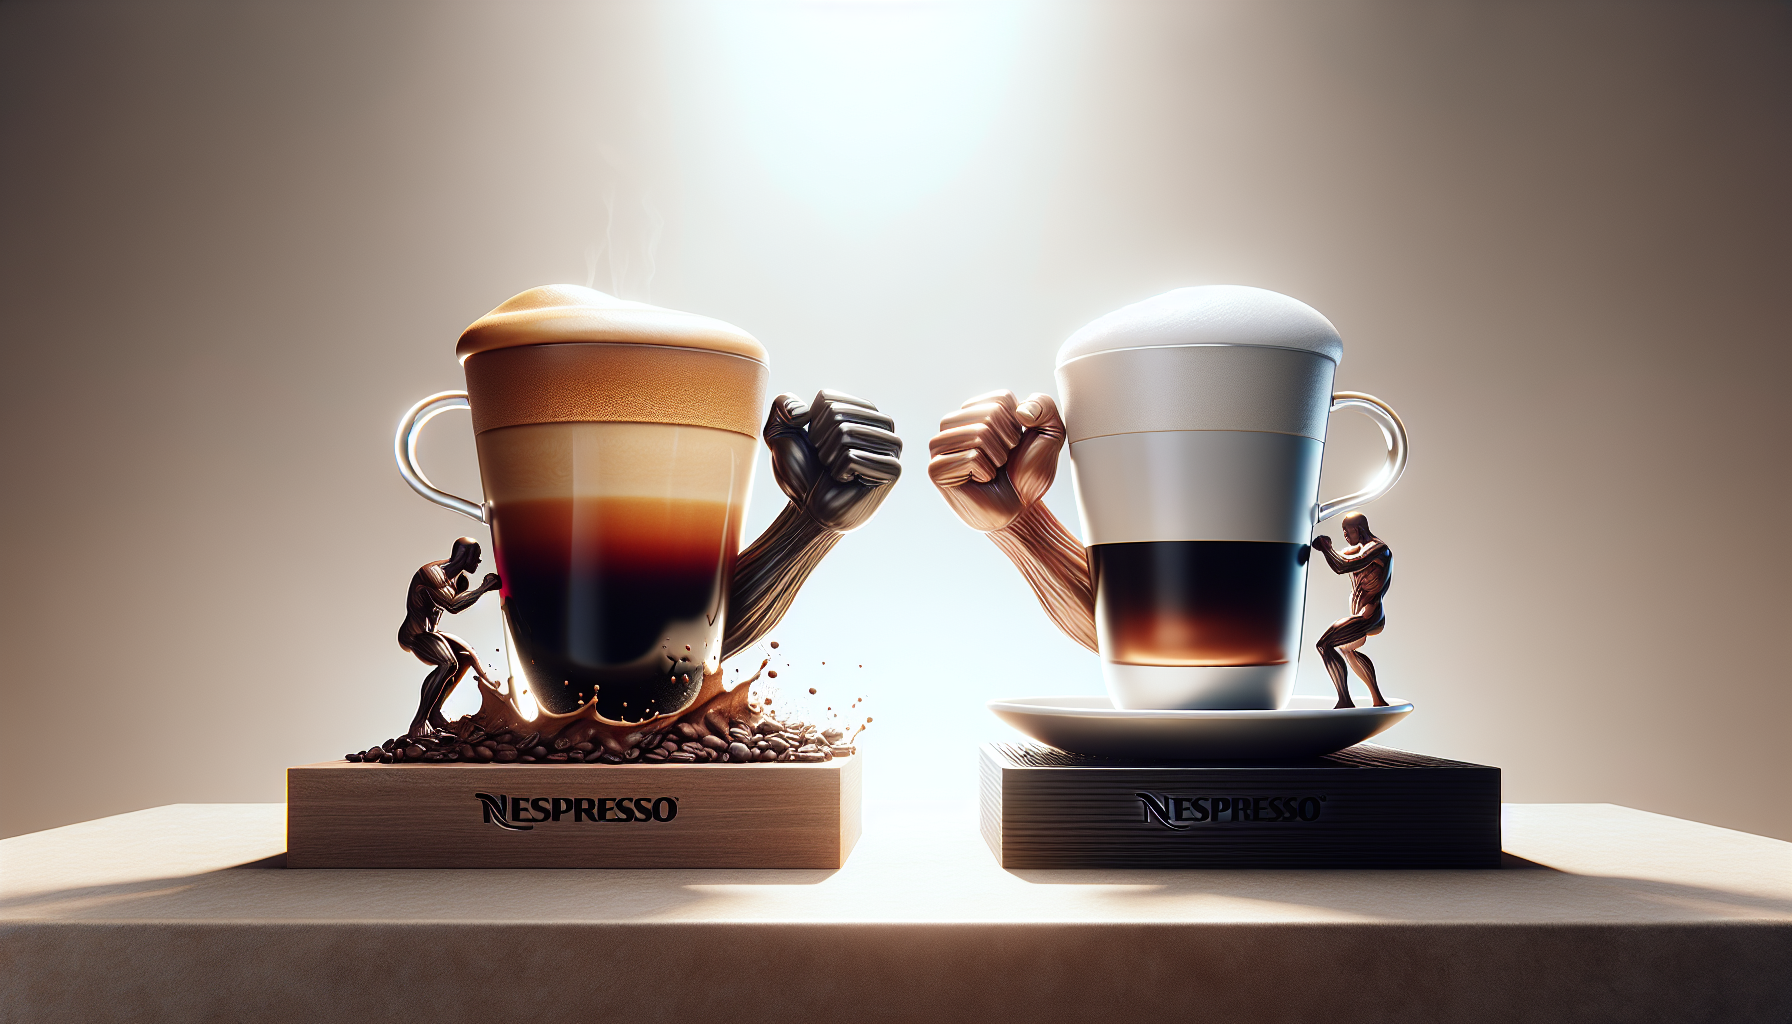 Who Are Nespresso Biggest Competitors?